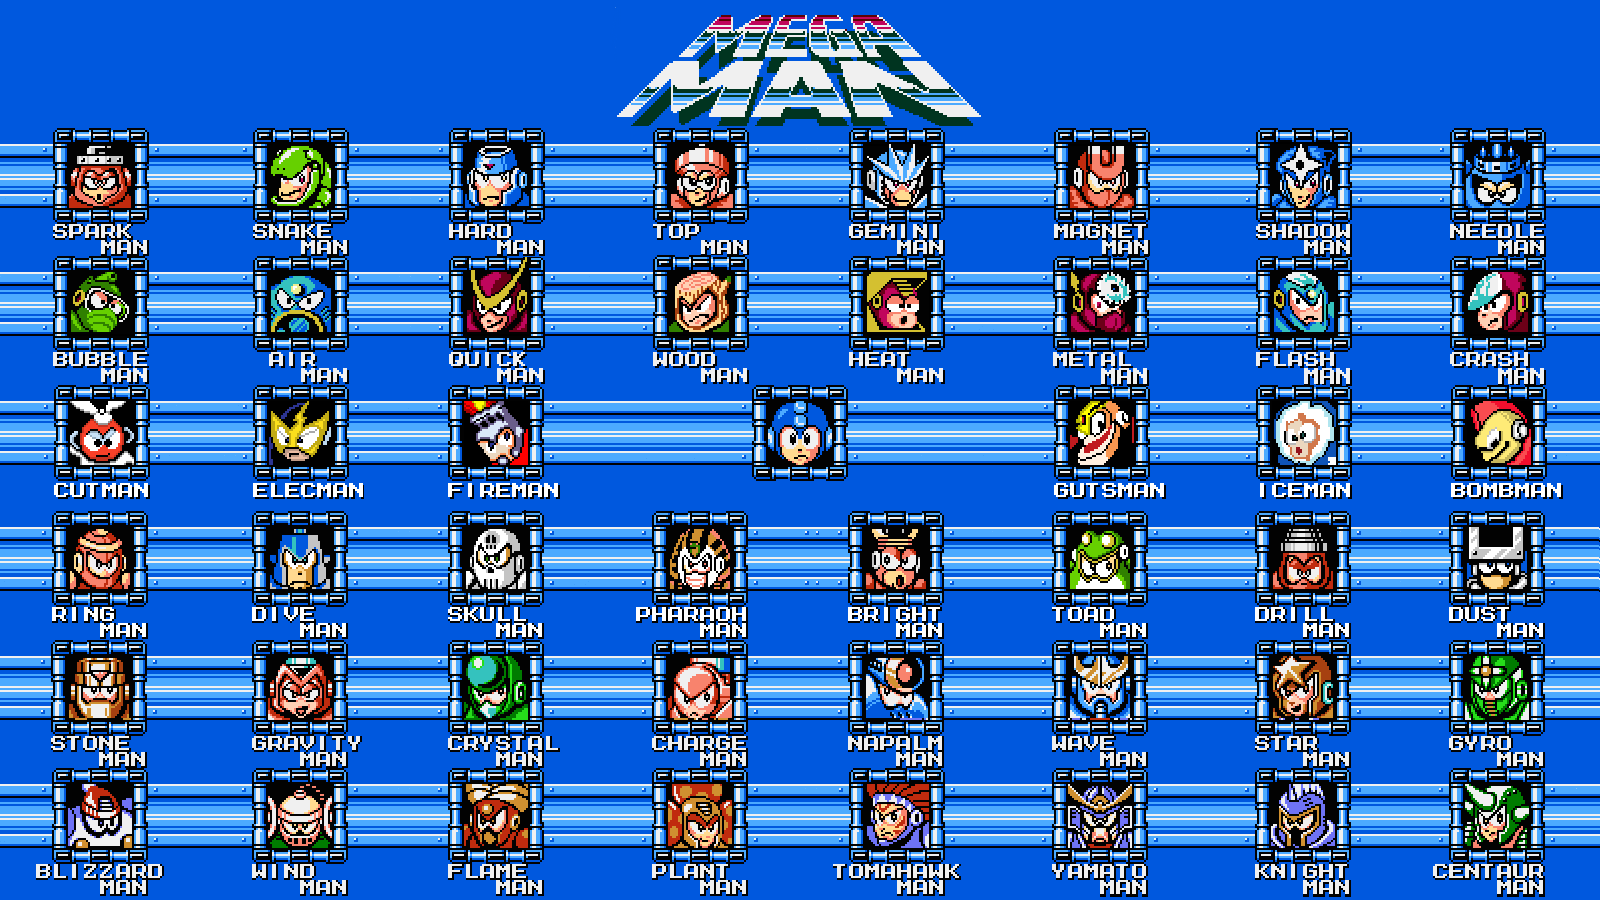 Air Man Mega Man Blizzard Man Mega Man Bomb Man Mega Man Bright Man Mega Man Bubble Man Mega Man Cen 1600x900